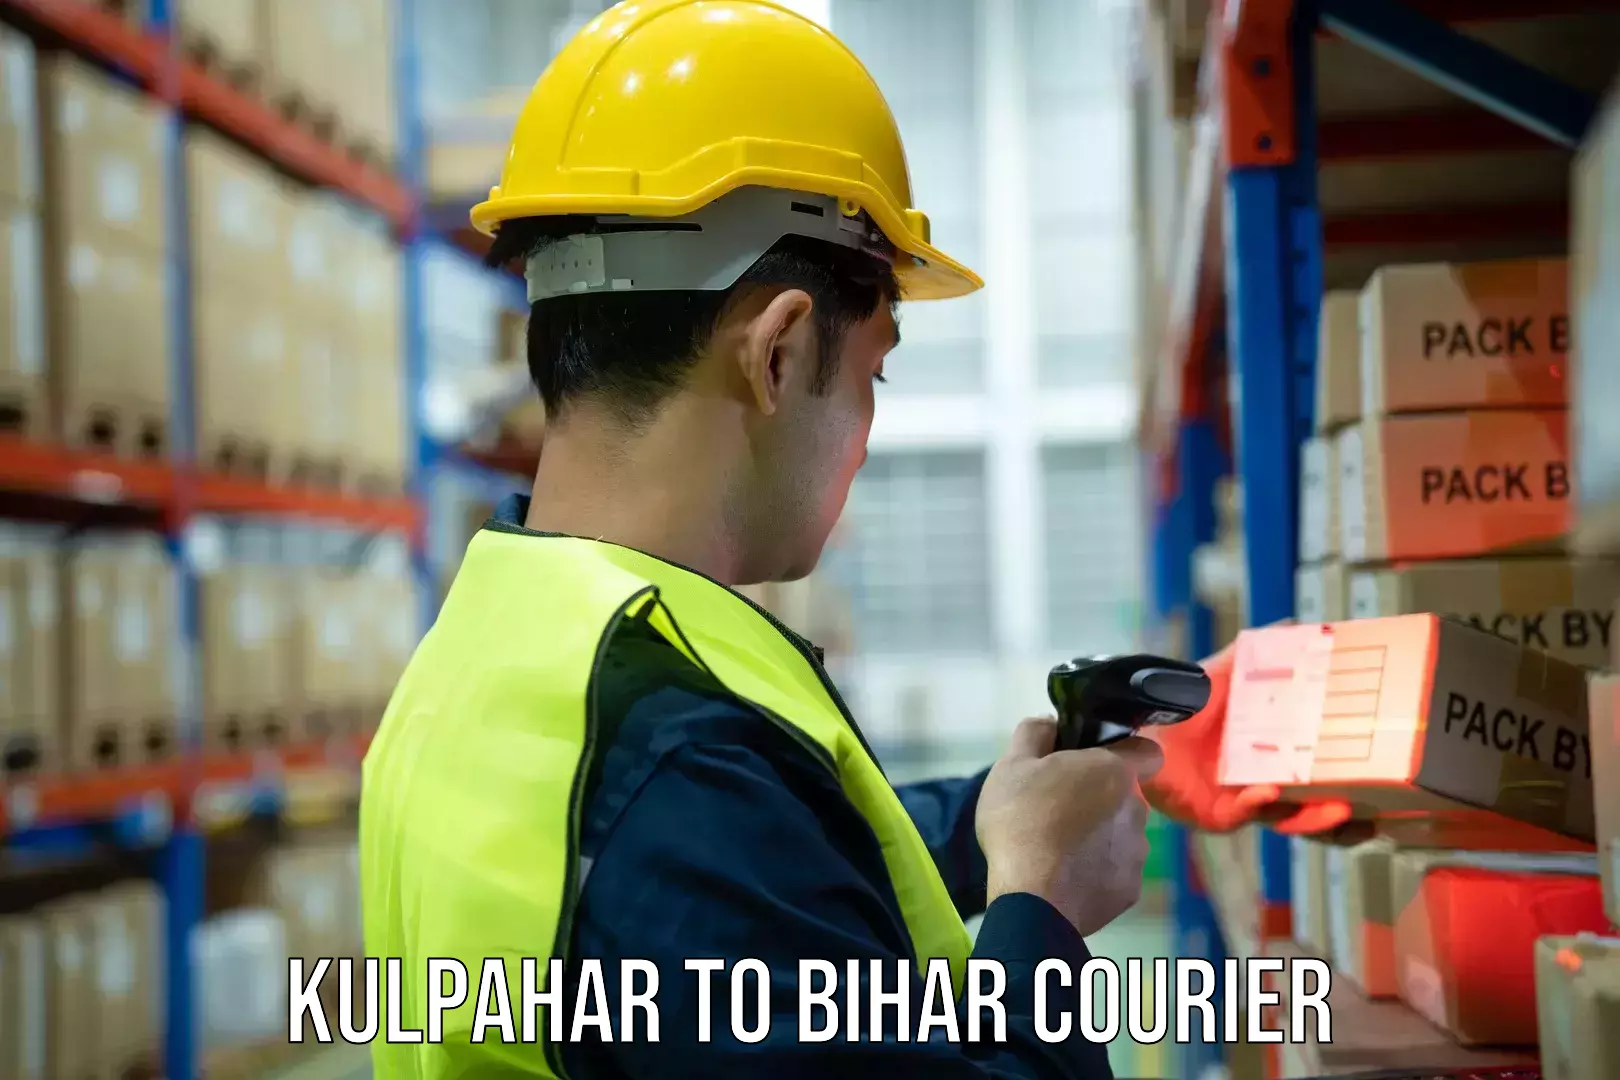 24/7 courier service Kulpahar to Raghunathpur Buxar